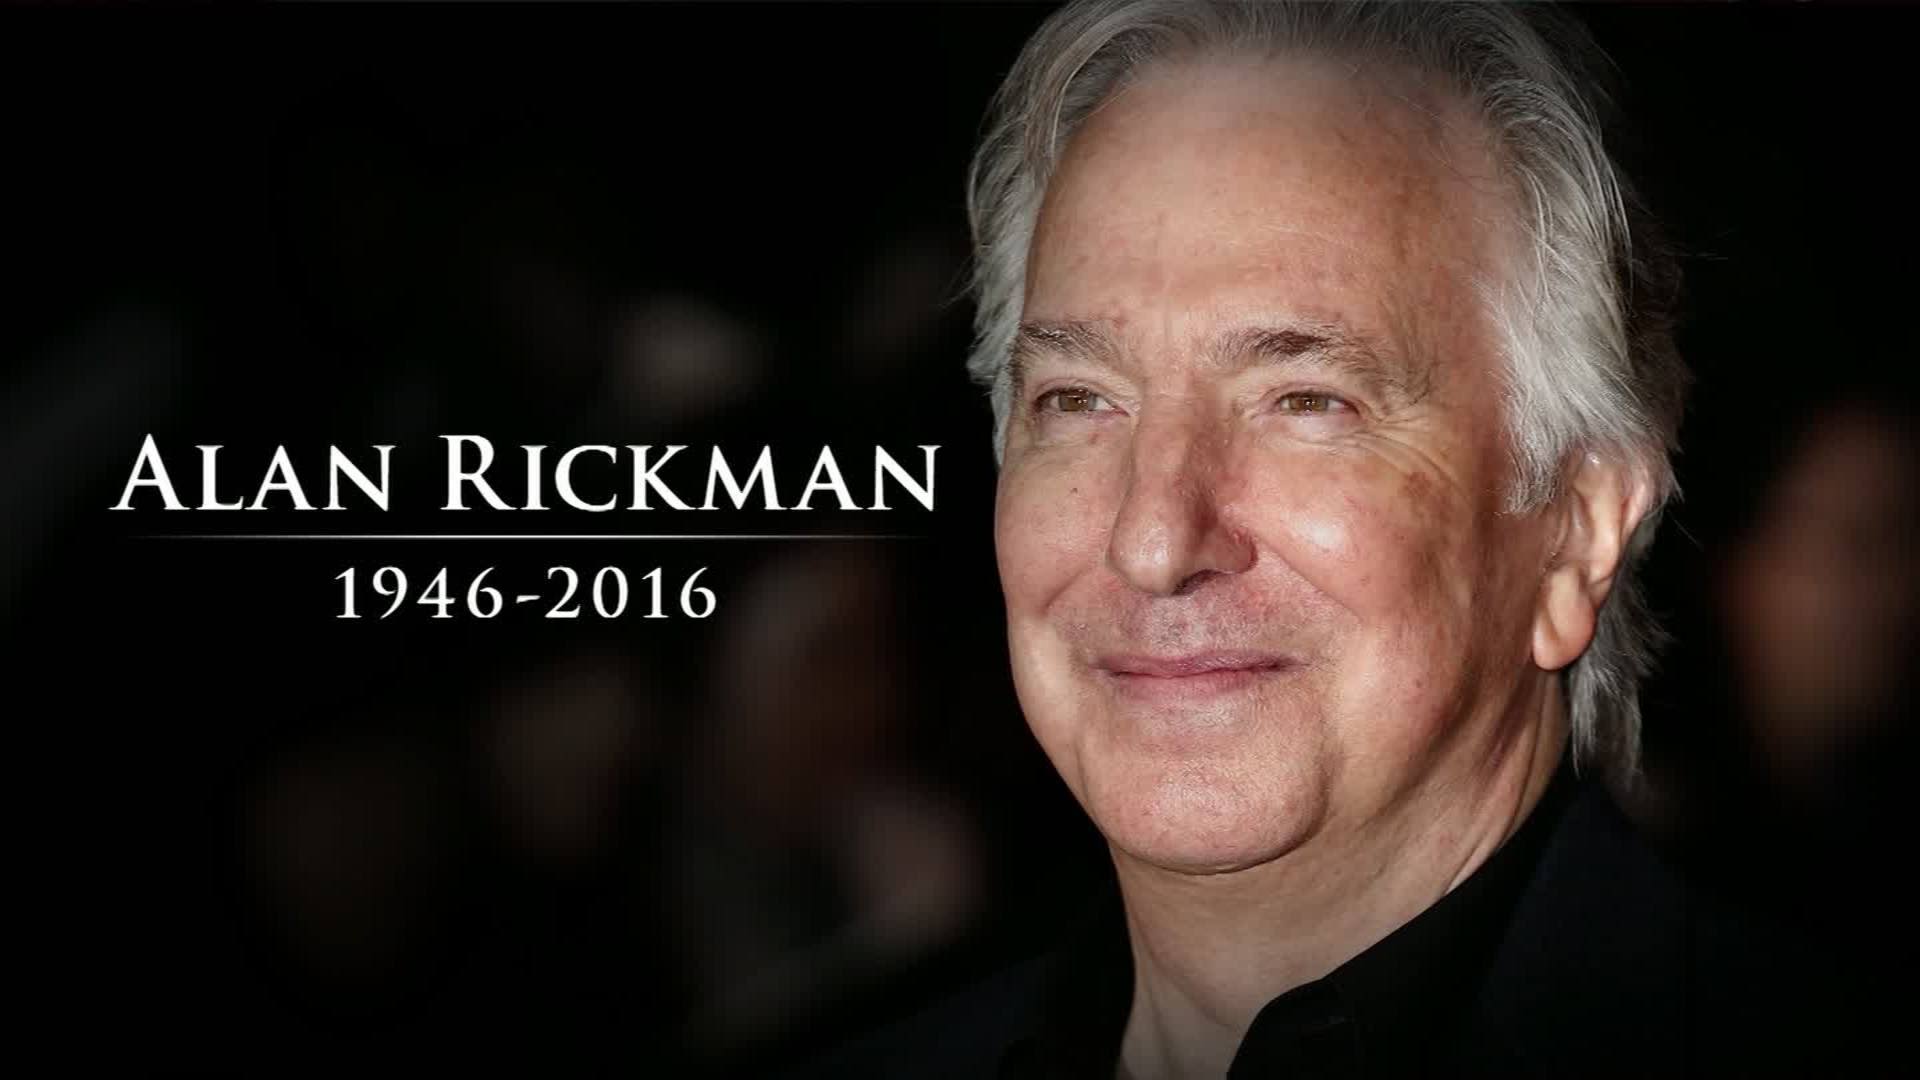 Harry Potter actor Alan Rickman dies at 69